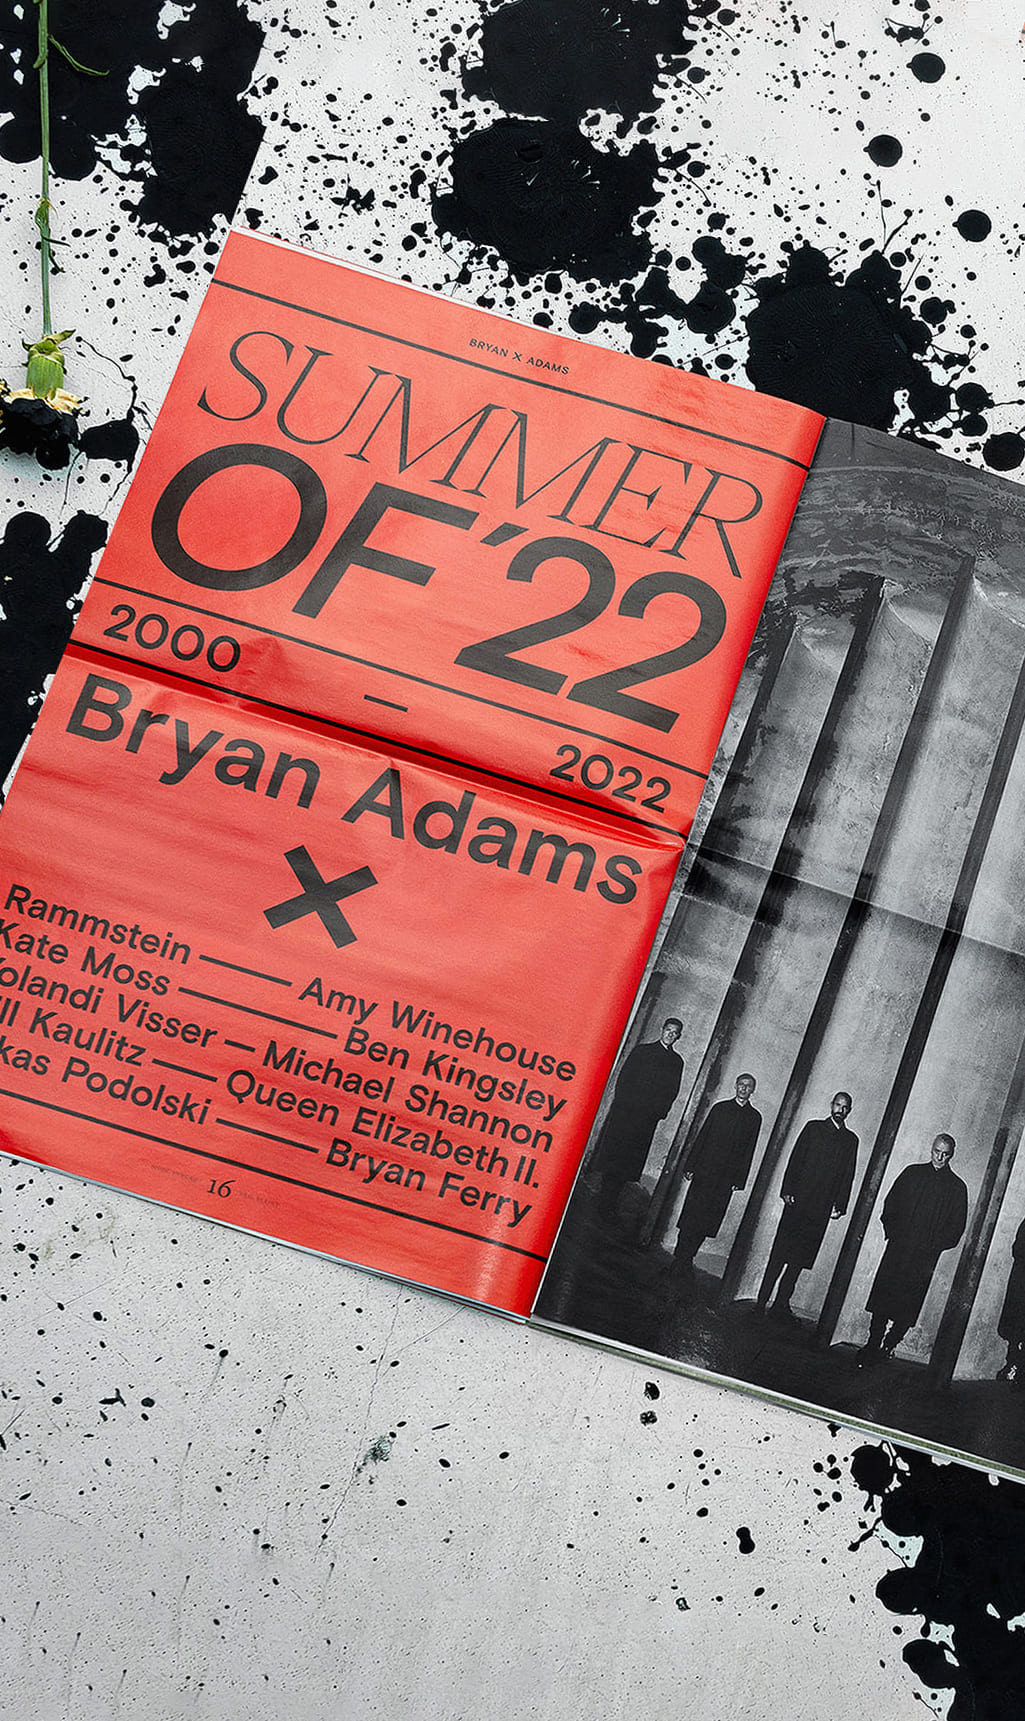 <p><em>Bryan Adams</em> x <em>Bryan Adams</em> – Magazine </p>
